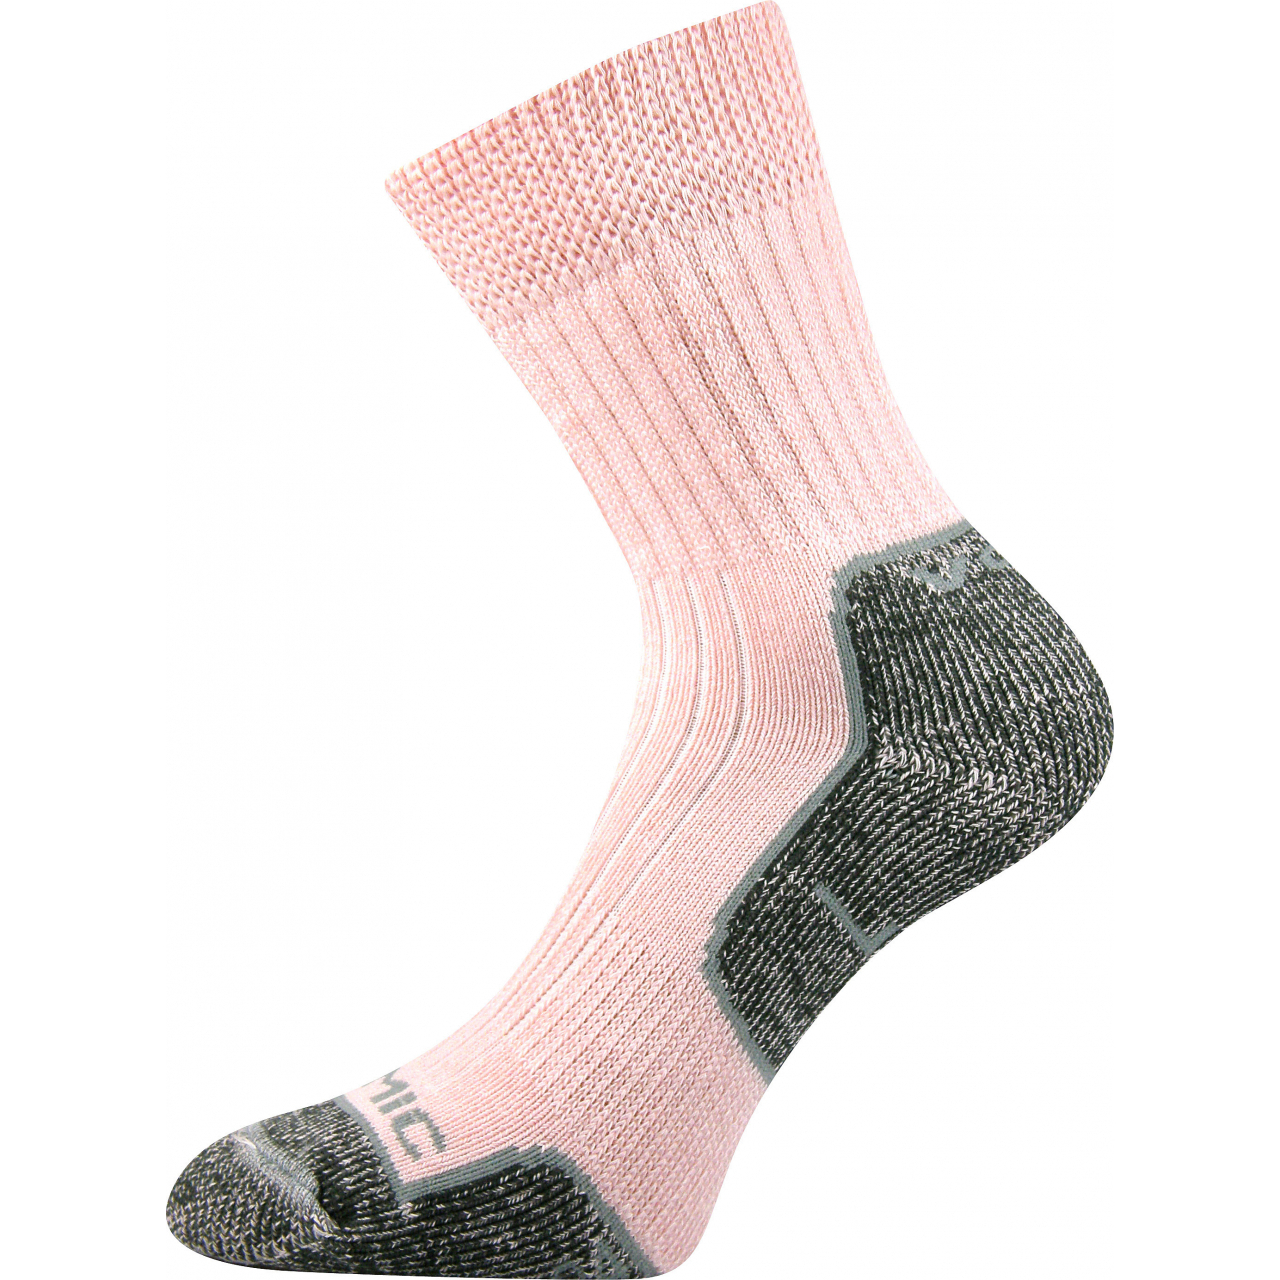 Ponožky unisex termo Voxx Zenith L + P - světle růžové-šedé, 38-39